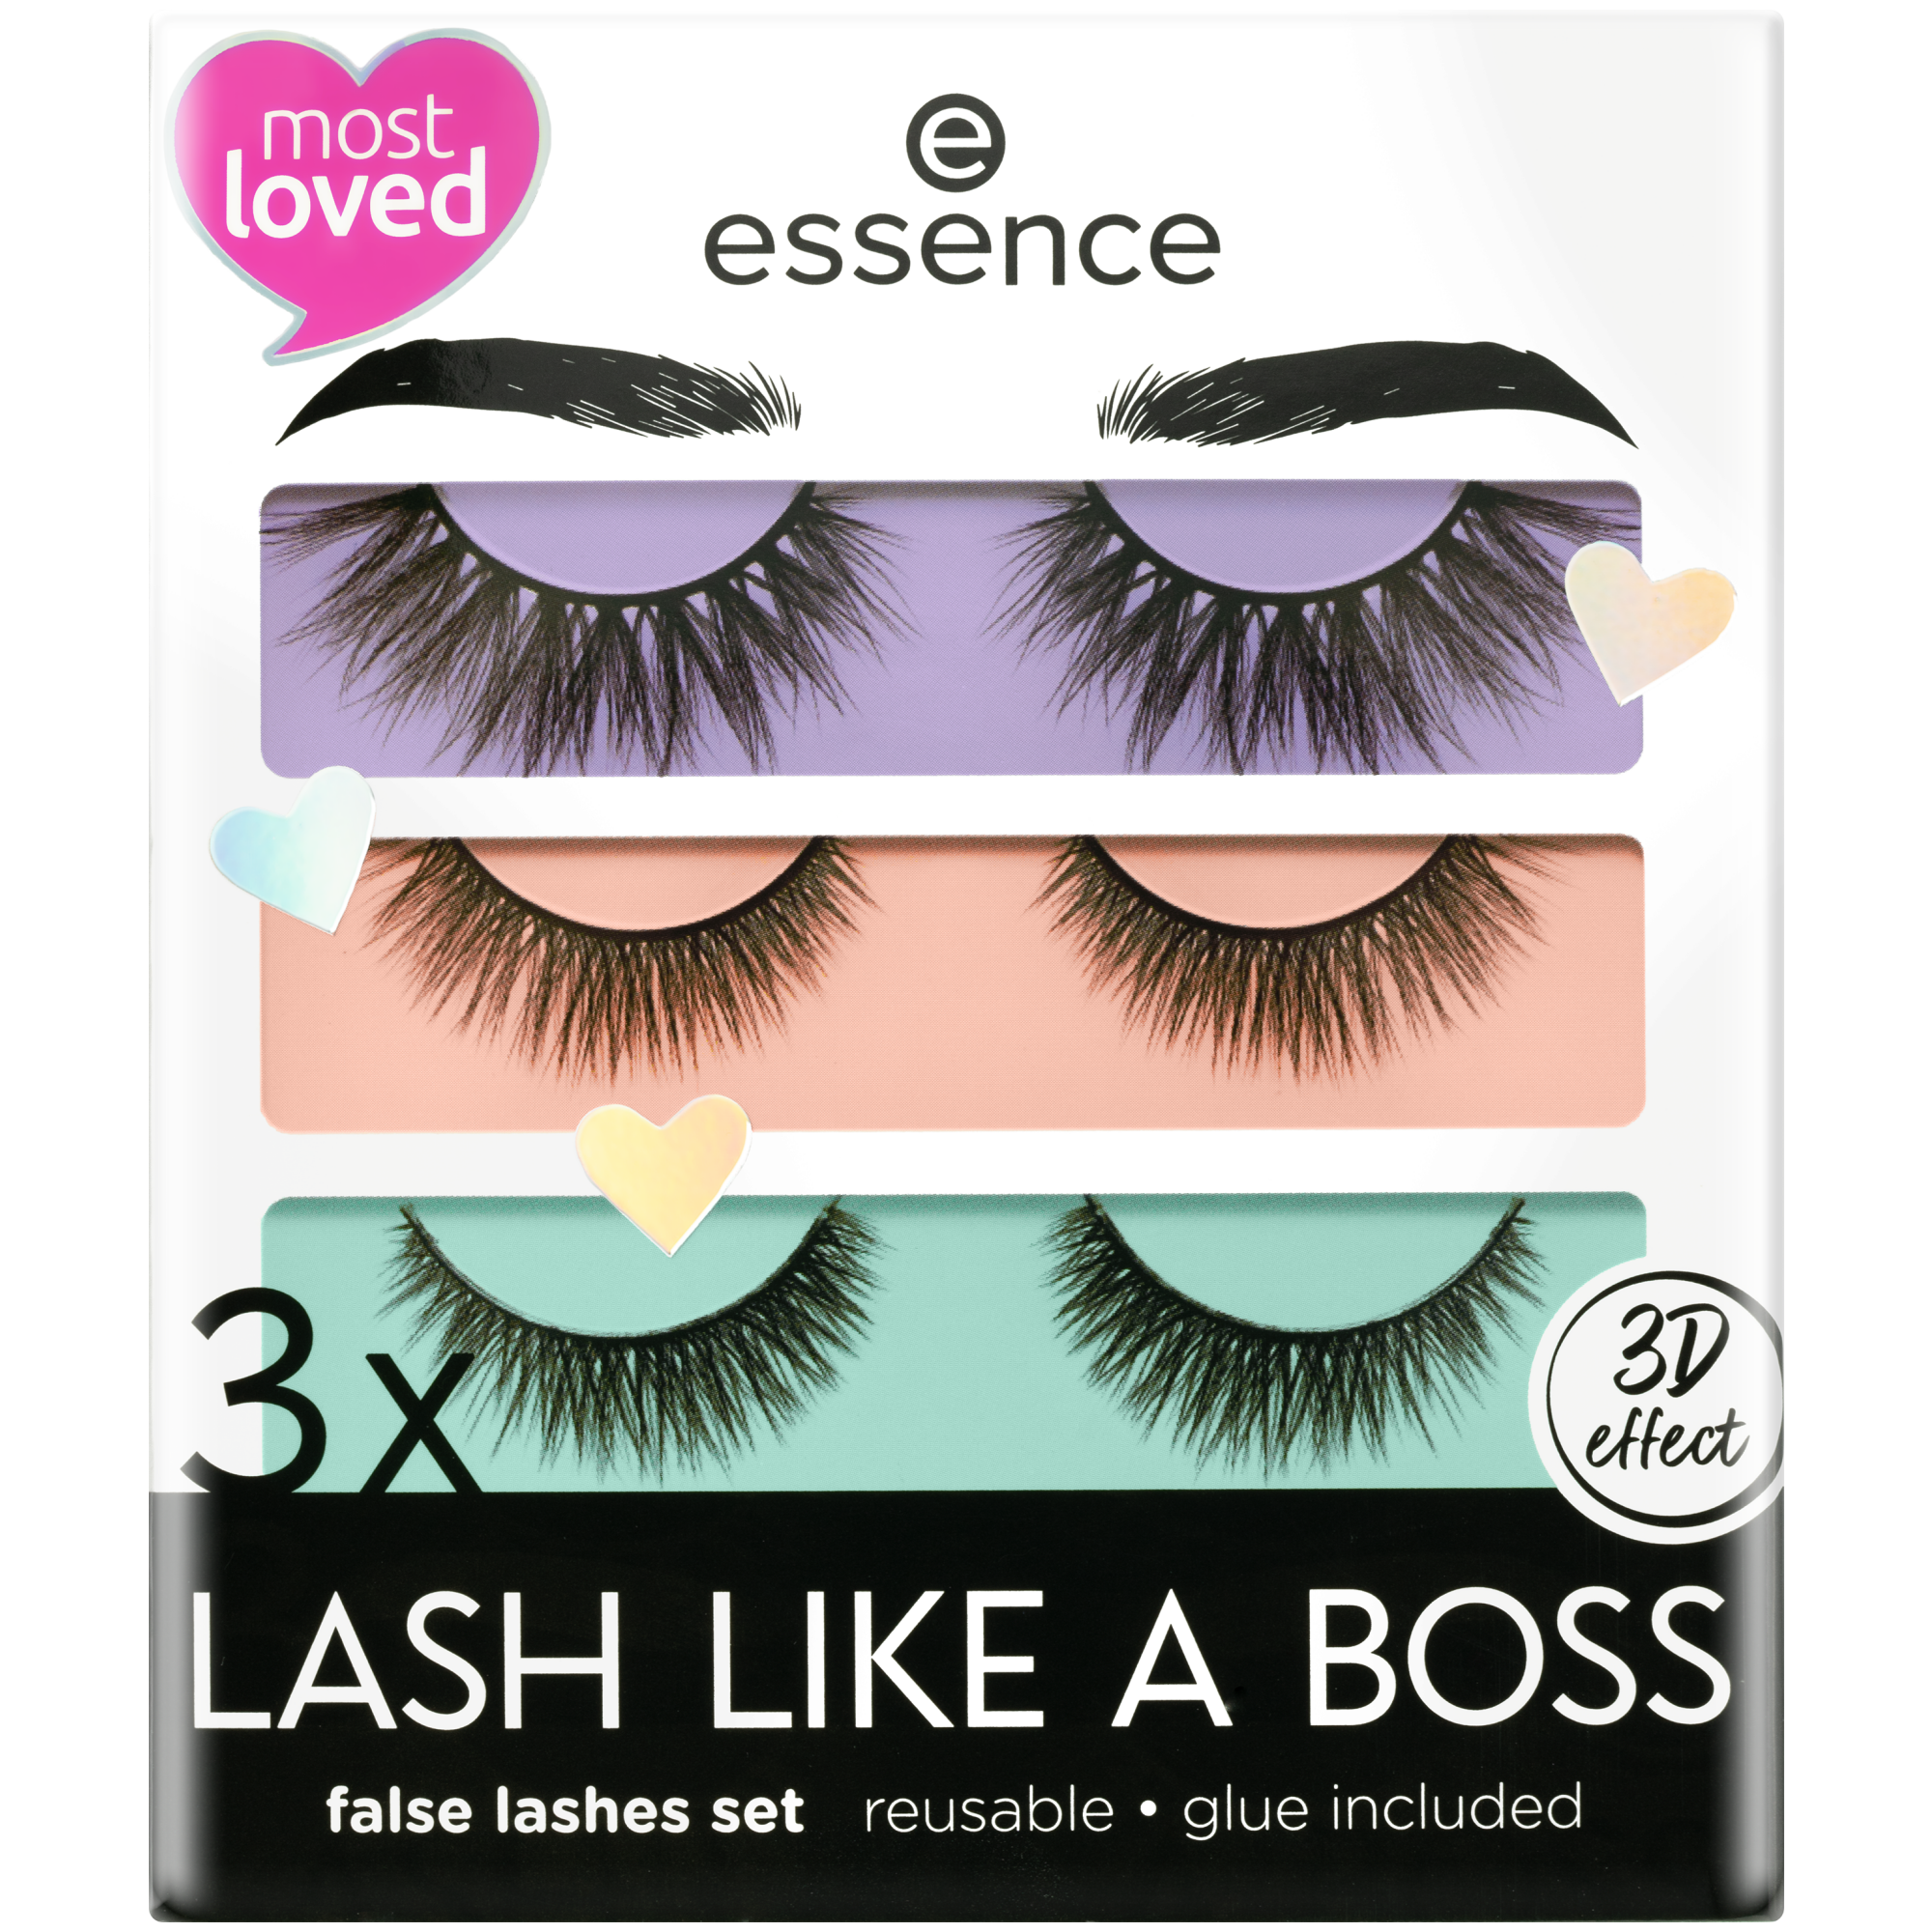 3X Lash Like A Boss essence makeup Lashes False –